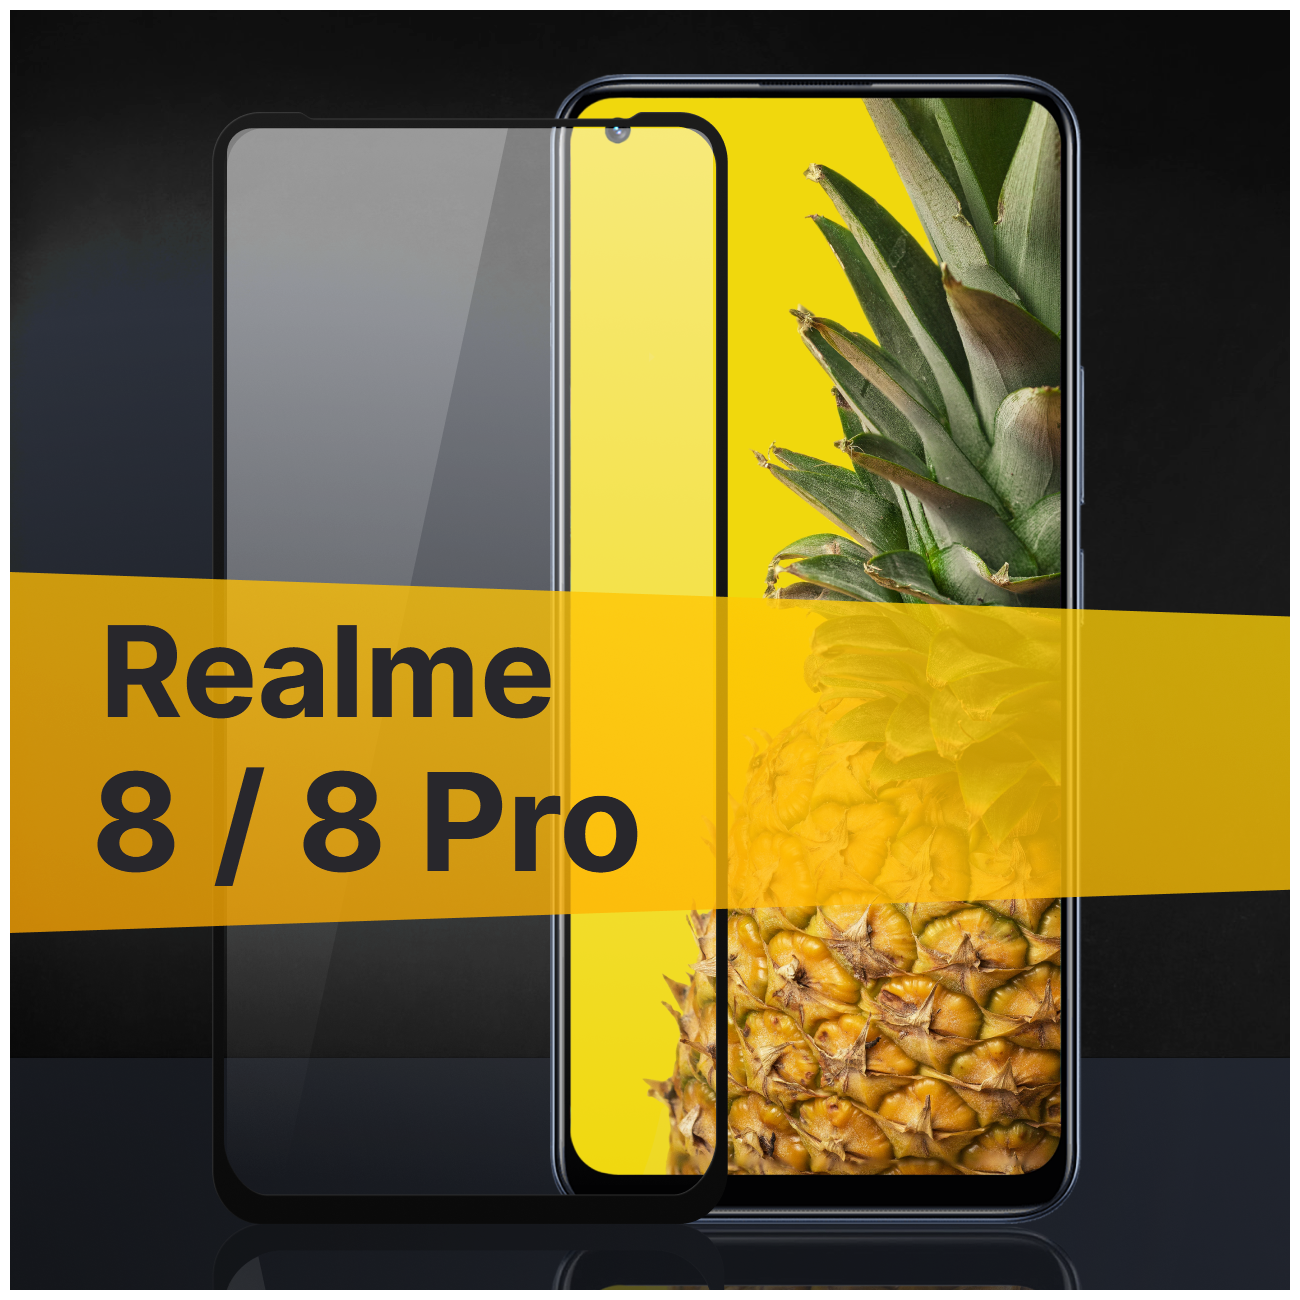 Противоударное защитное стекло для телефона Realme 8 и 8 Pro / Полноклеевое 3D стекло с олеофобным покрытием на смартфон Реалми 8 и 8 Про / С черной рамкой